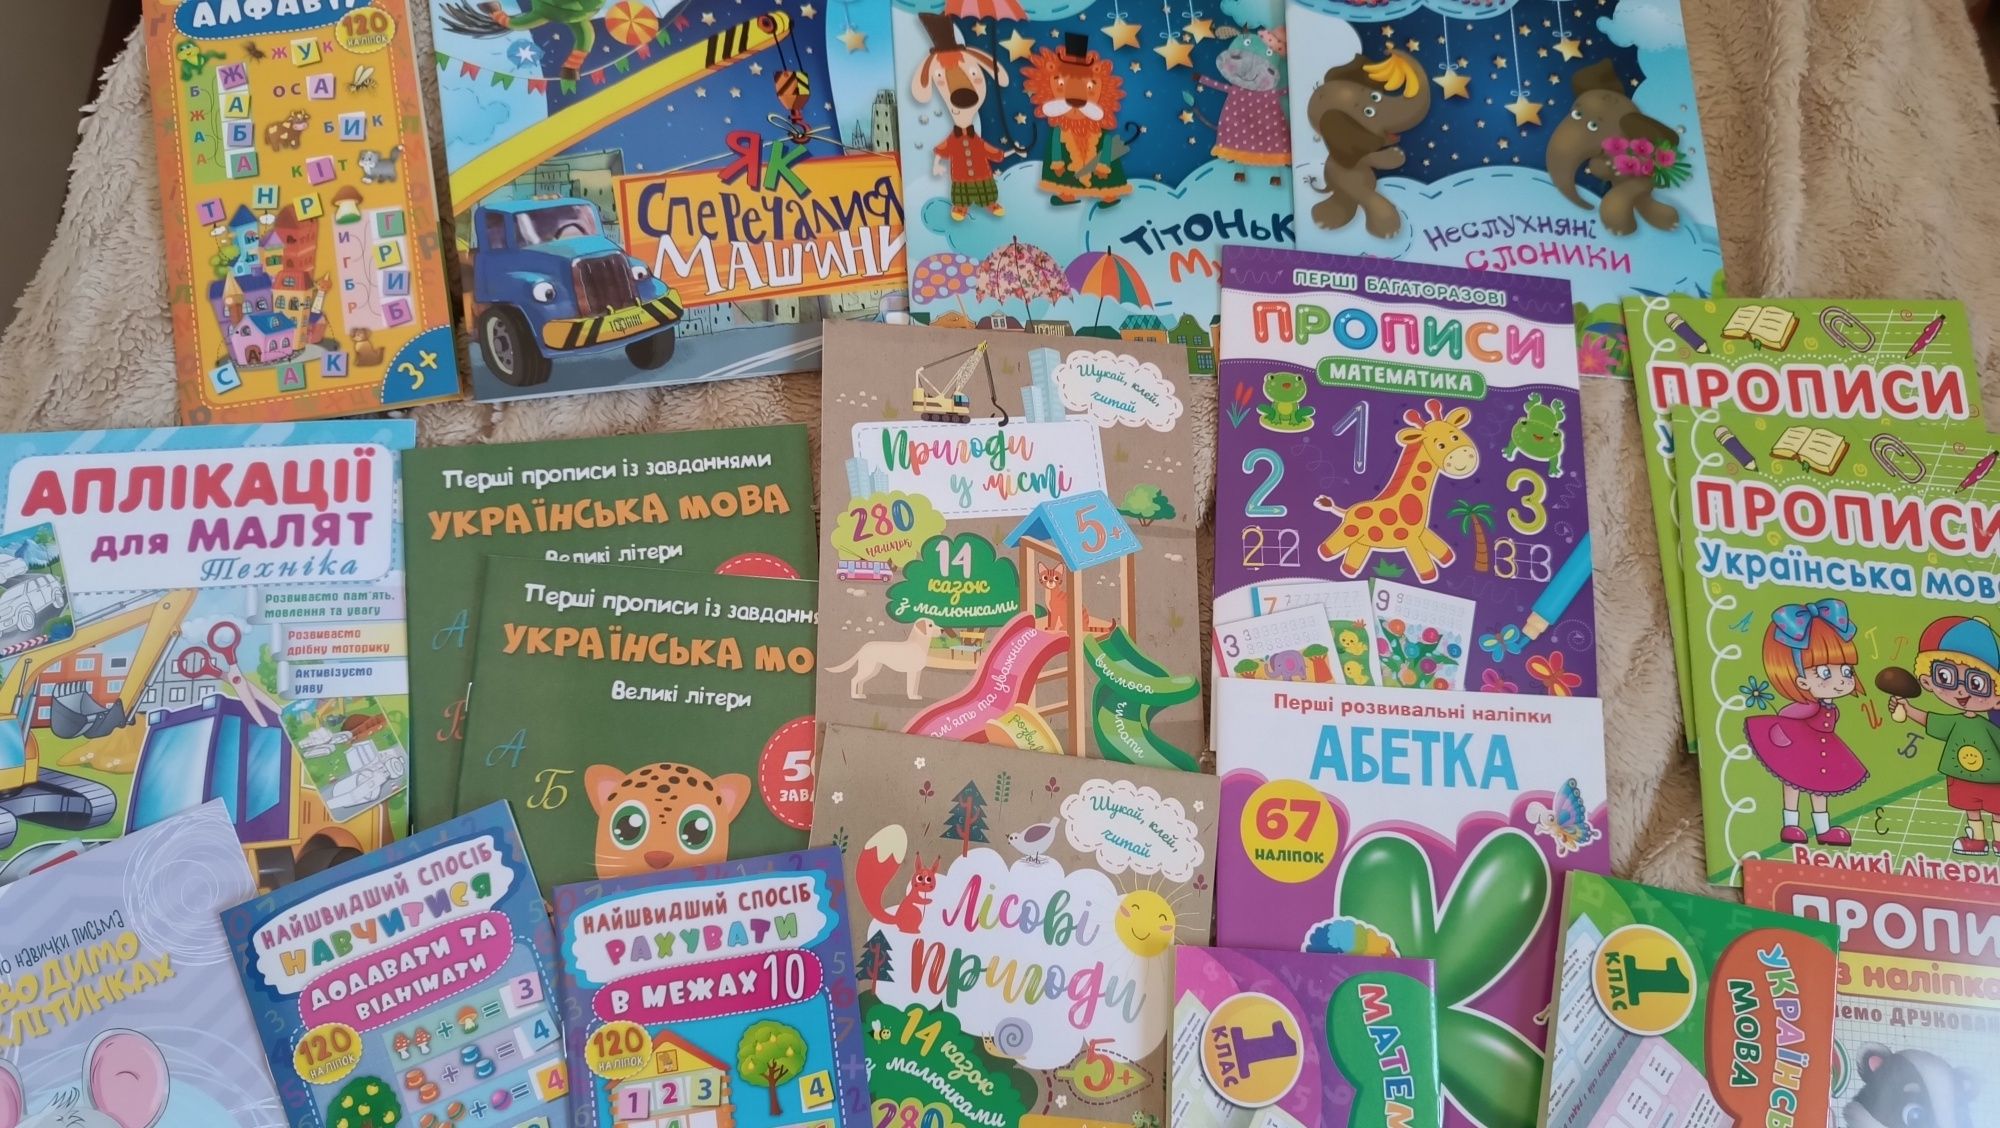 Wyprzedaż ukraińskich zeszytów dla dzieci w wieku 3-6 lat.